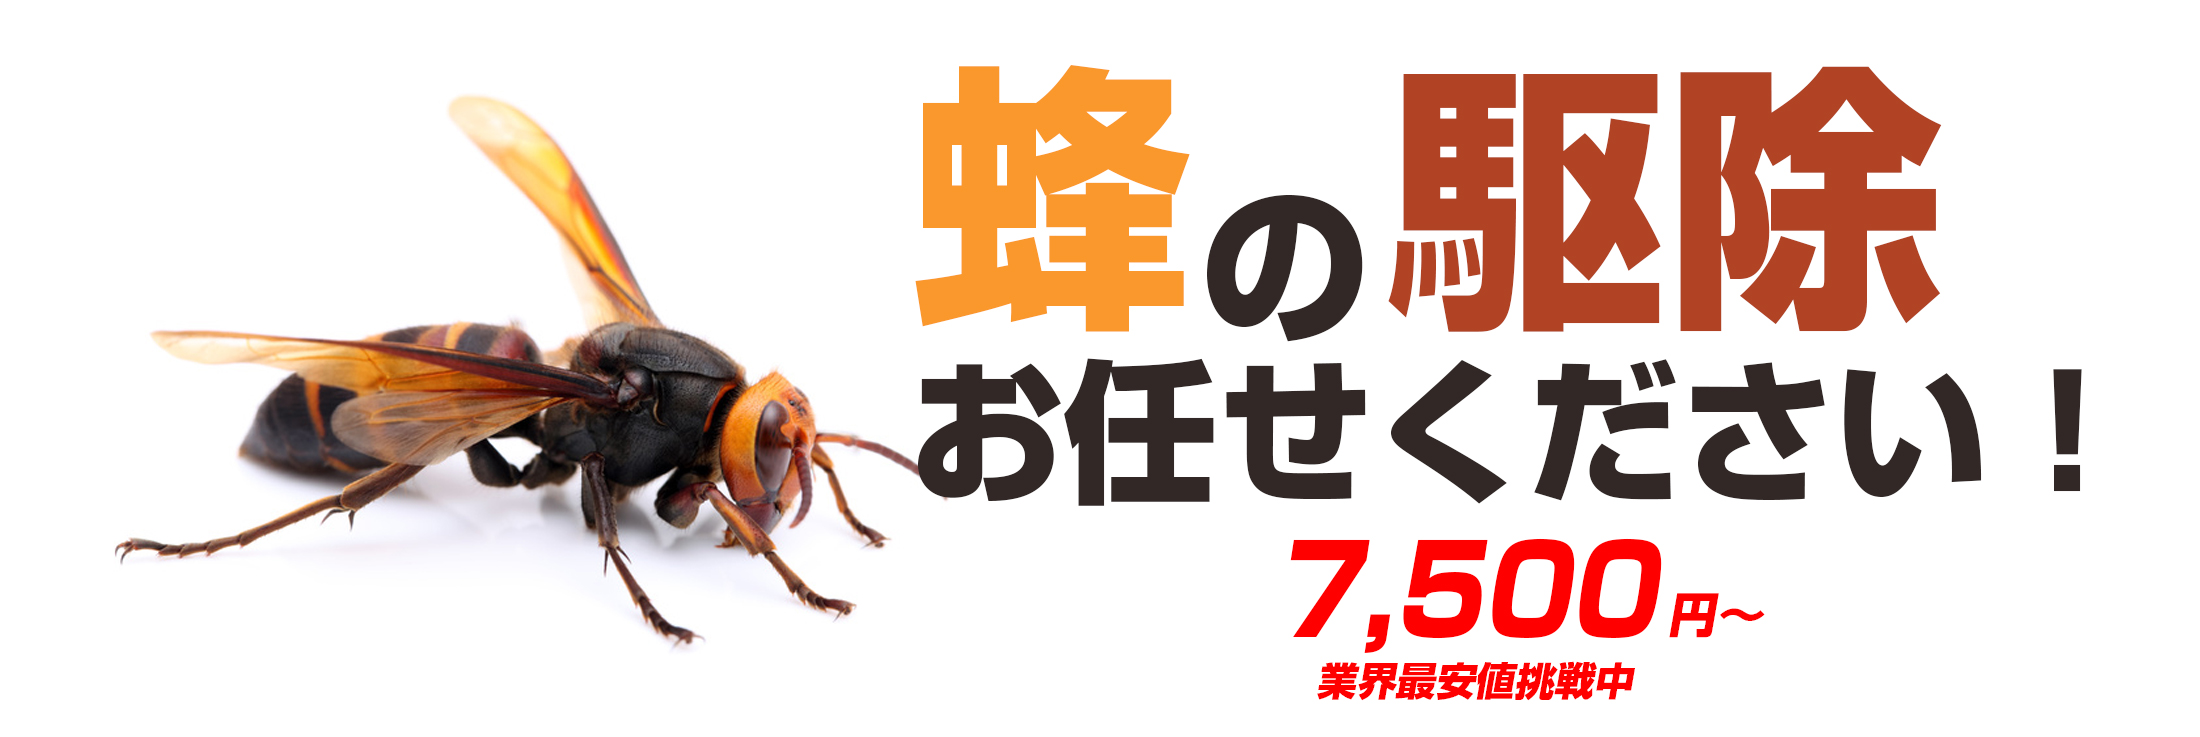 蜂の駆除お任せください。千葉、東京、埼玉、茨城の各県で蜂に関するお悩み、蜂の駆除お任せください。迅速な対応で最短30分でお宅に伺います。料金は、蜂の巣駆除業界で最安値の7500円から。アフターフォローも完璧。蜂の巣を駆除した場所と同じ場所に巣が作られにくくする薬剤を散布します。万が一、6ヵ月以内に同じ場所に再度巣が作られた場合は無料で駆除致します。